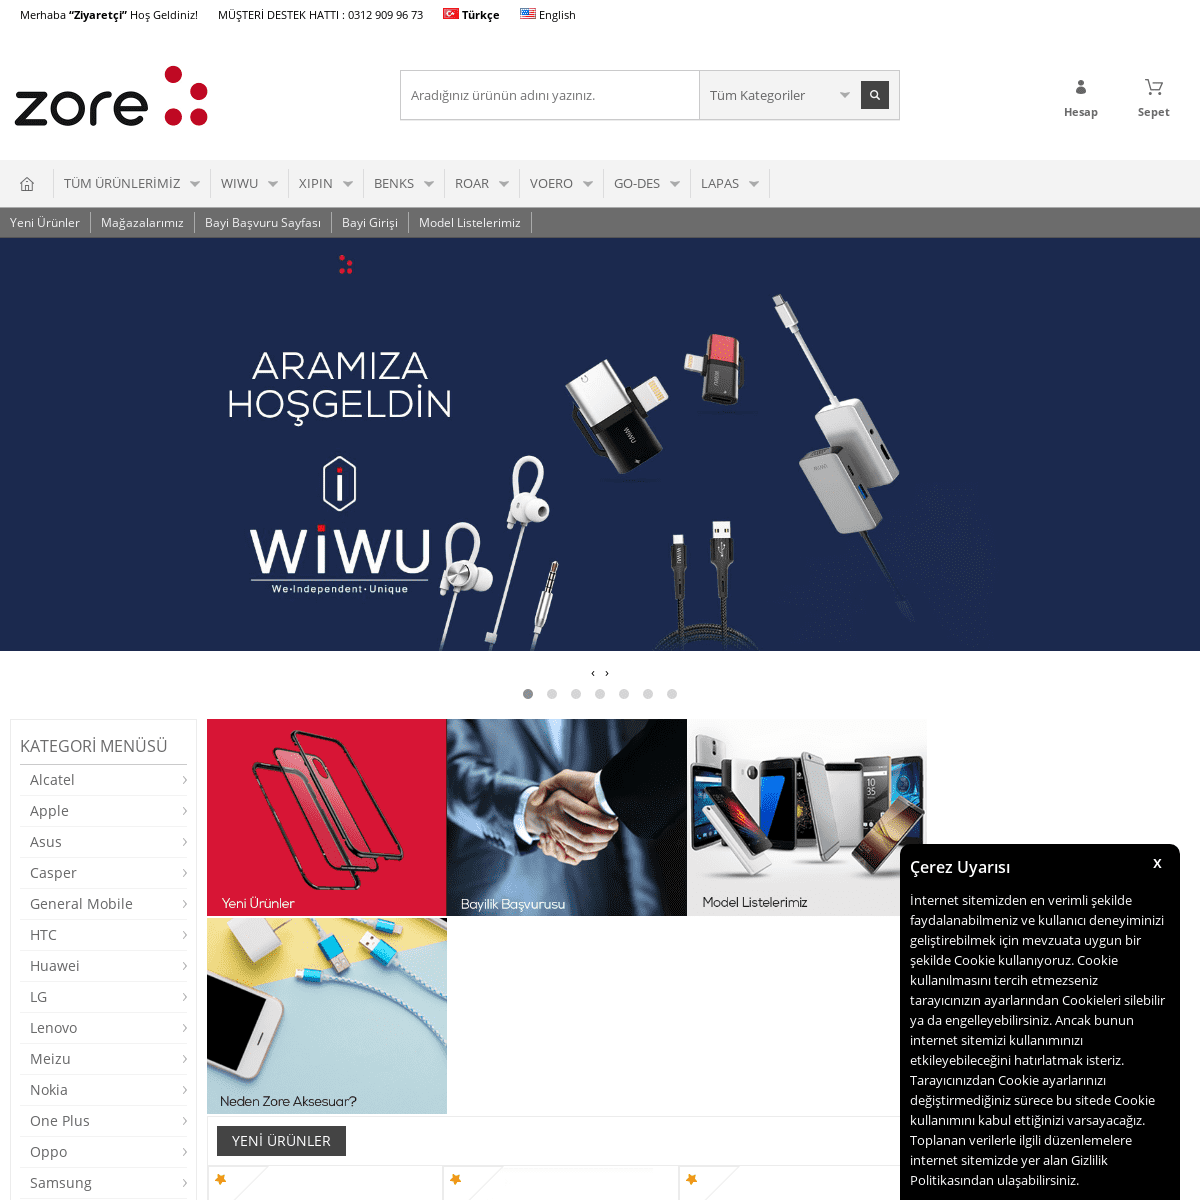 A complete backup of zoreaksesuar.com